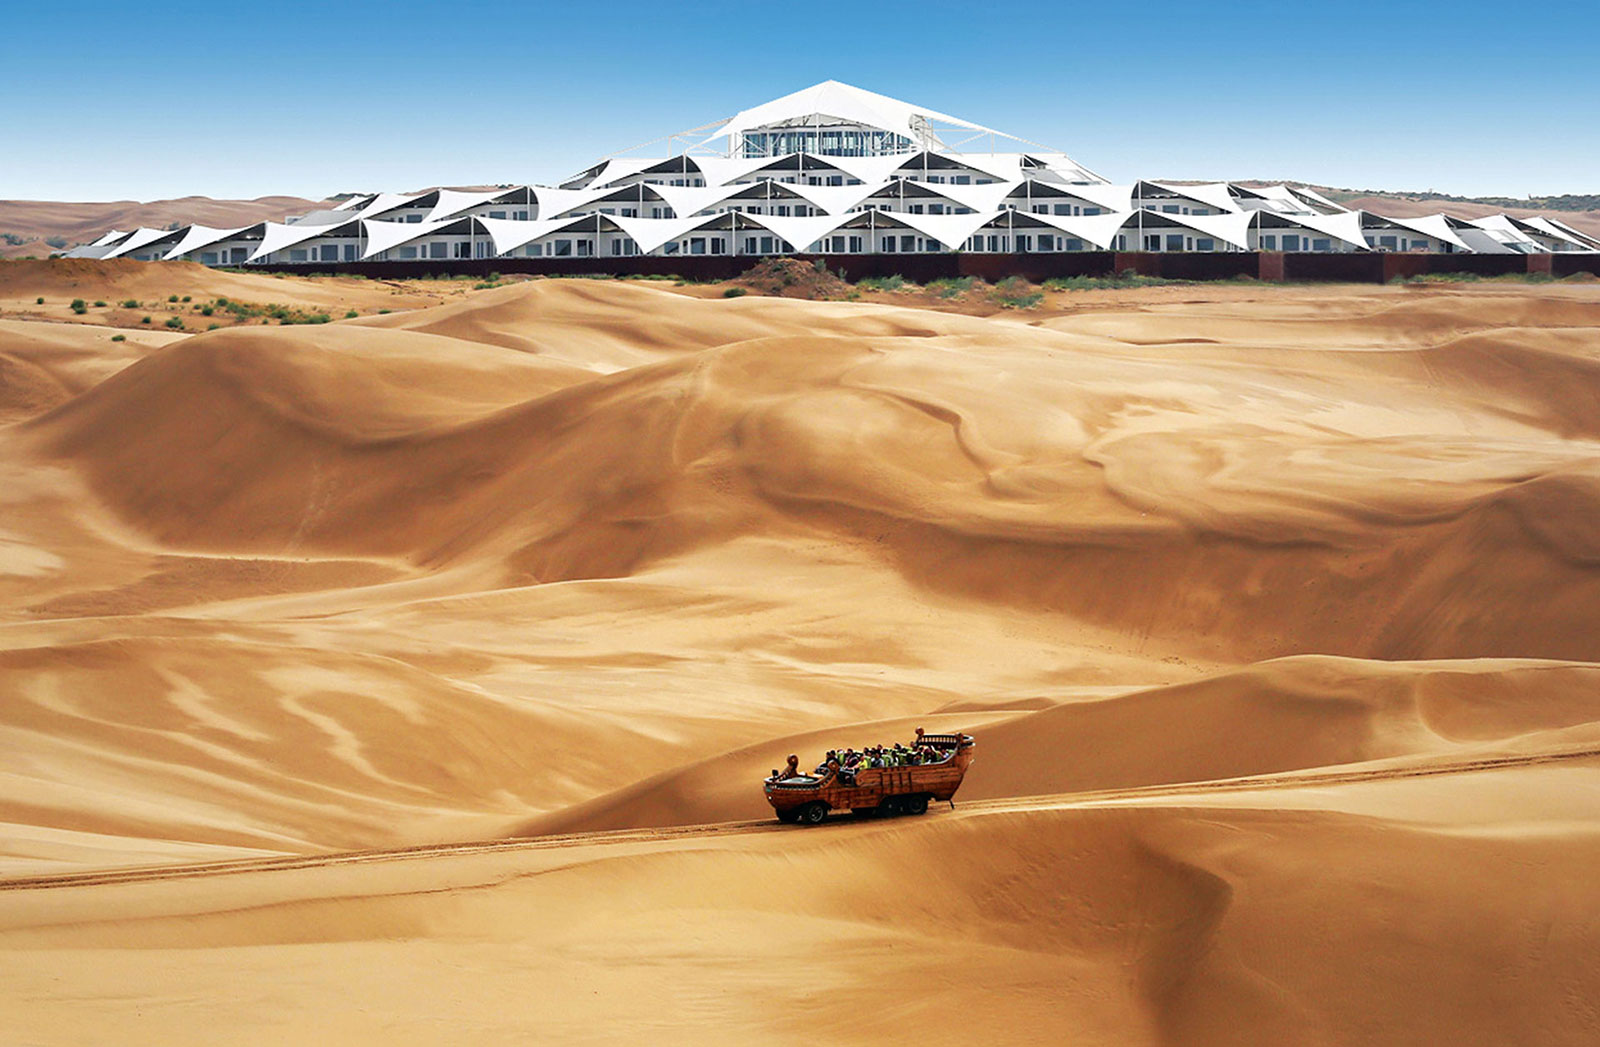 在旱地中盛放的白莲花,内蒙古响沙湾沙漠莲花酒店